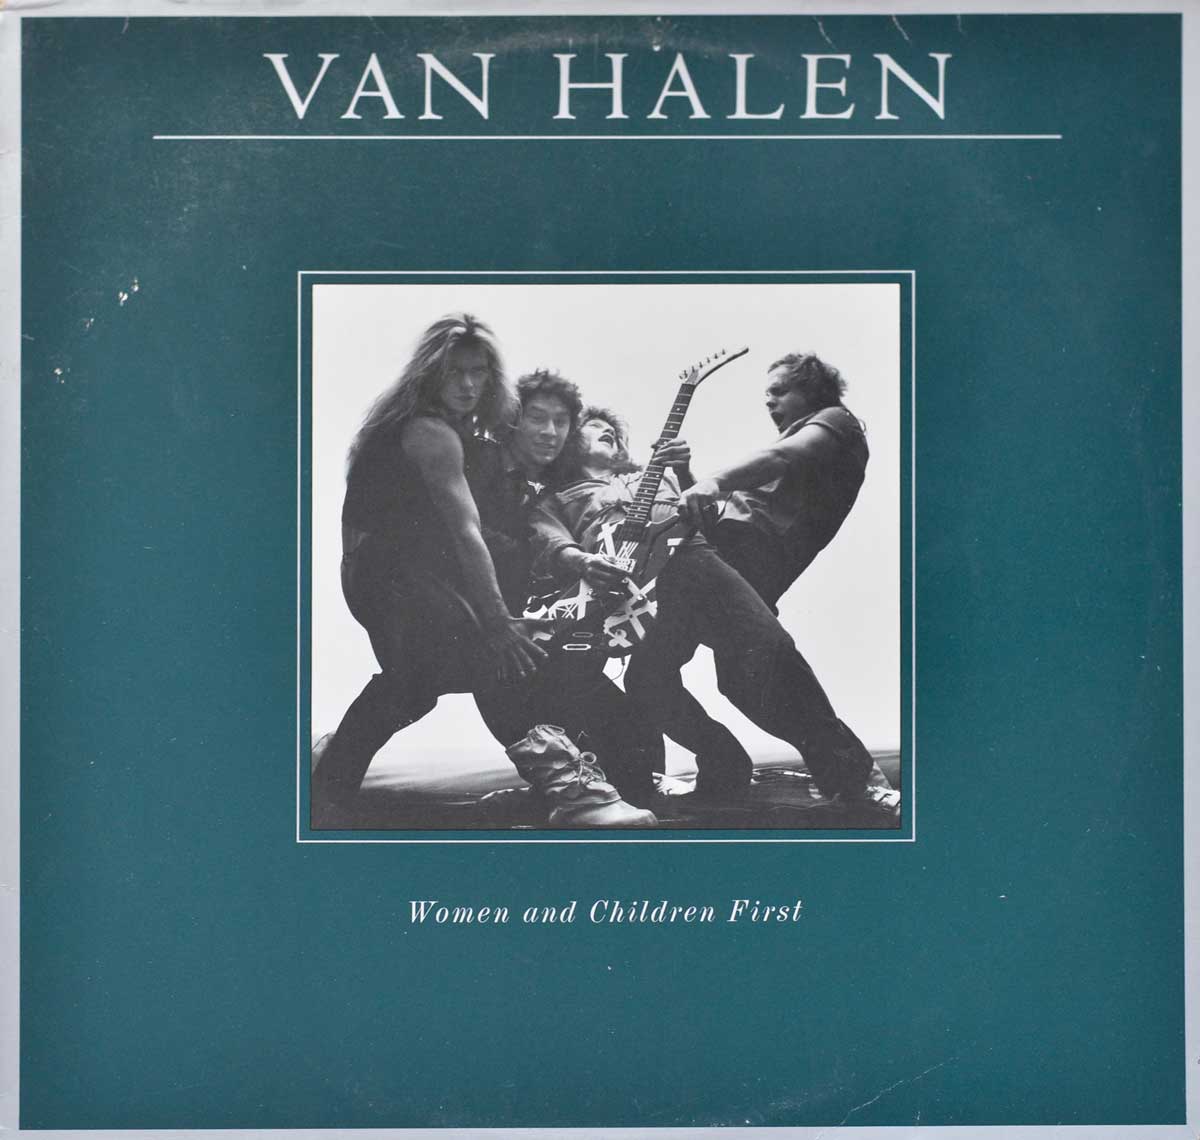 Album Front Cover Photo of VAN HALEN - Women and Children First - American Hard Rock 